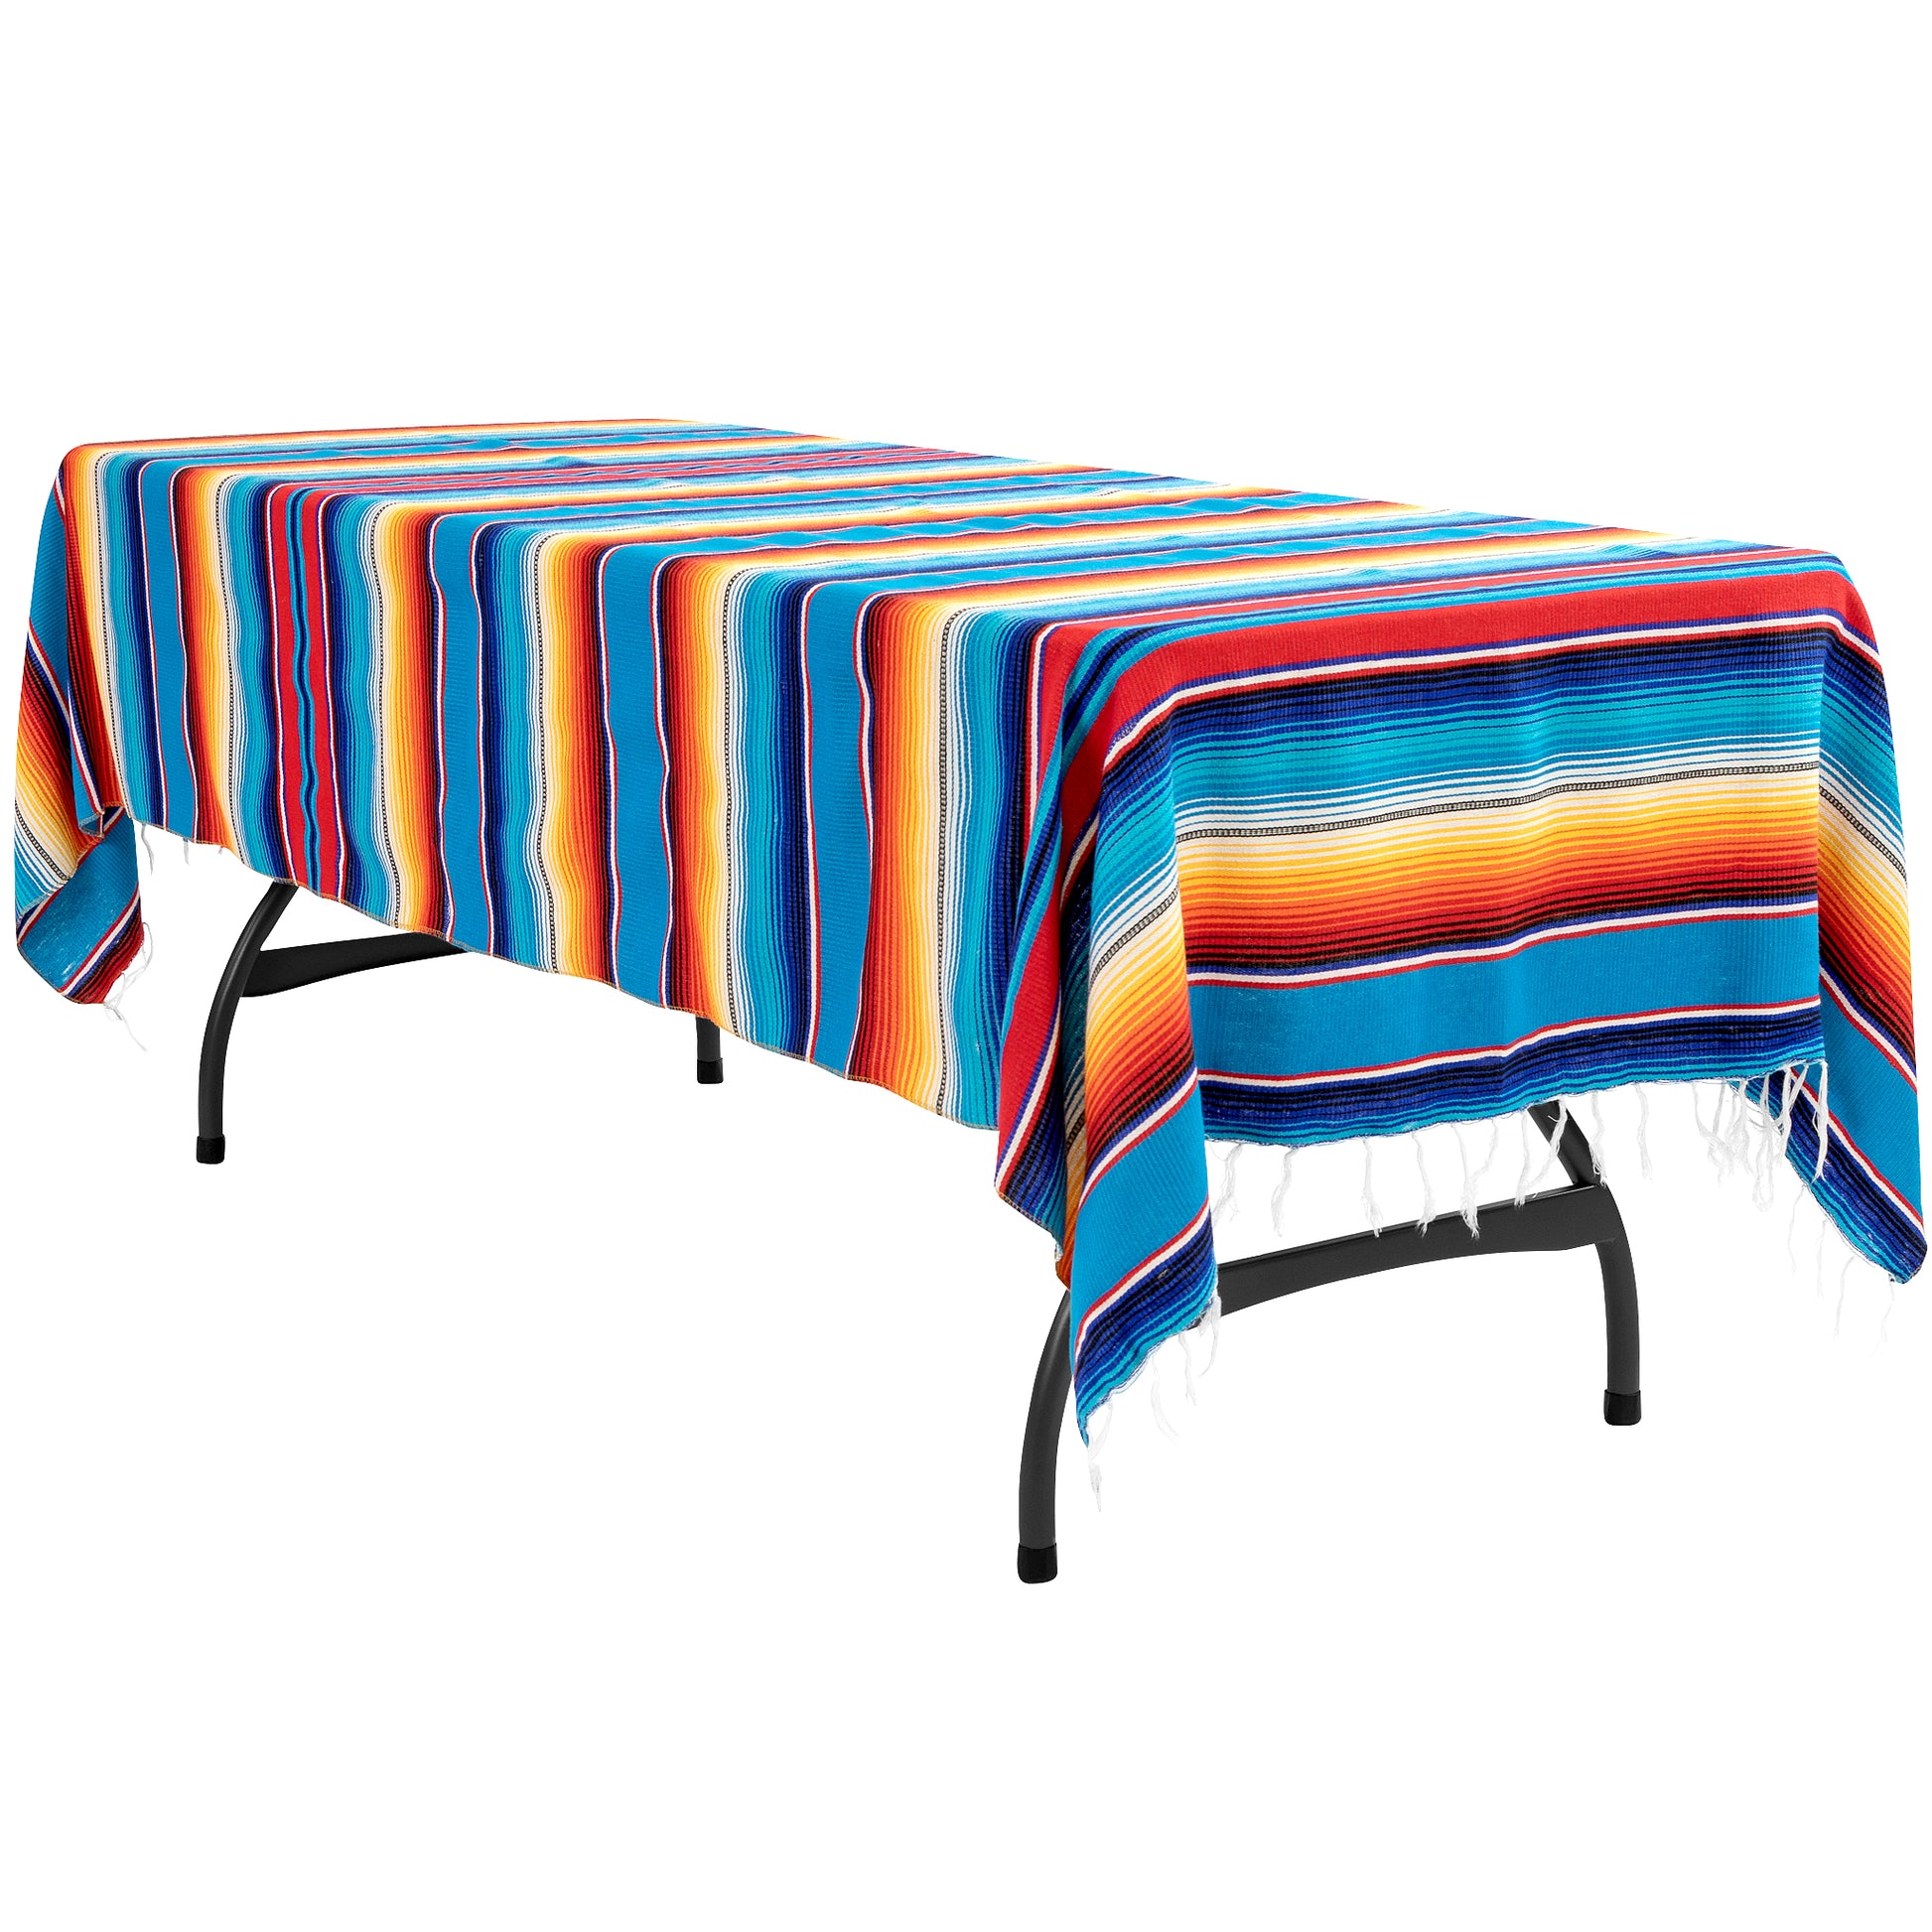 Woven Mexican Serape Table Rectangular